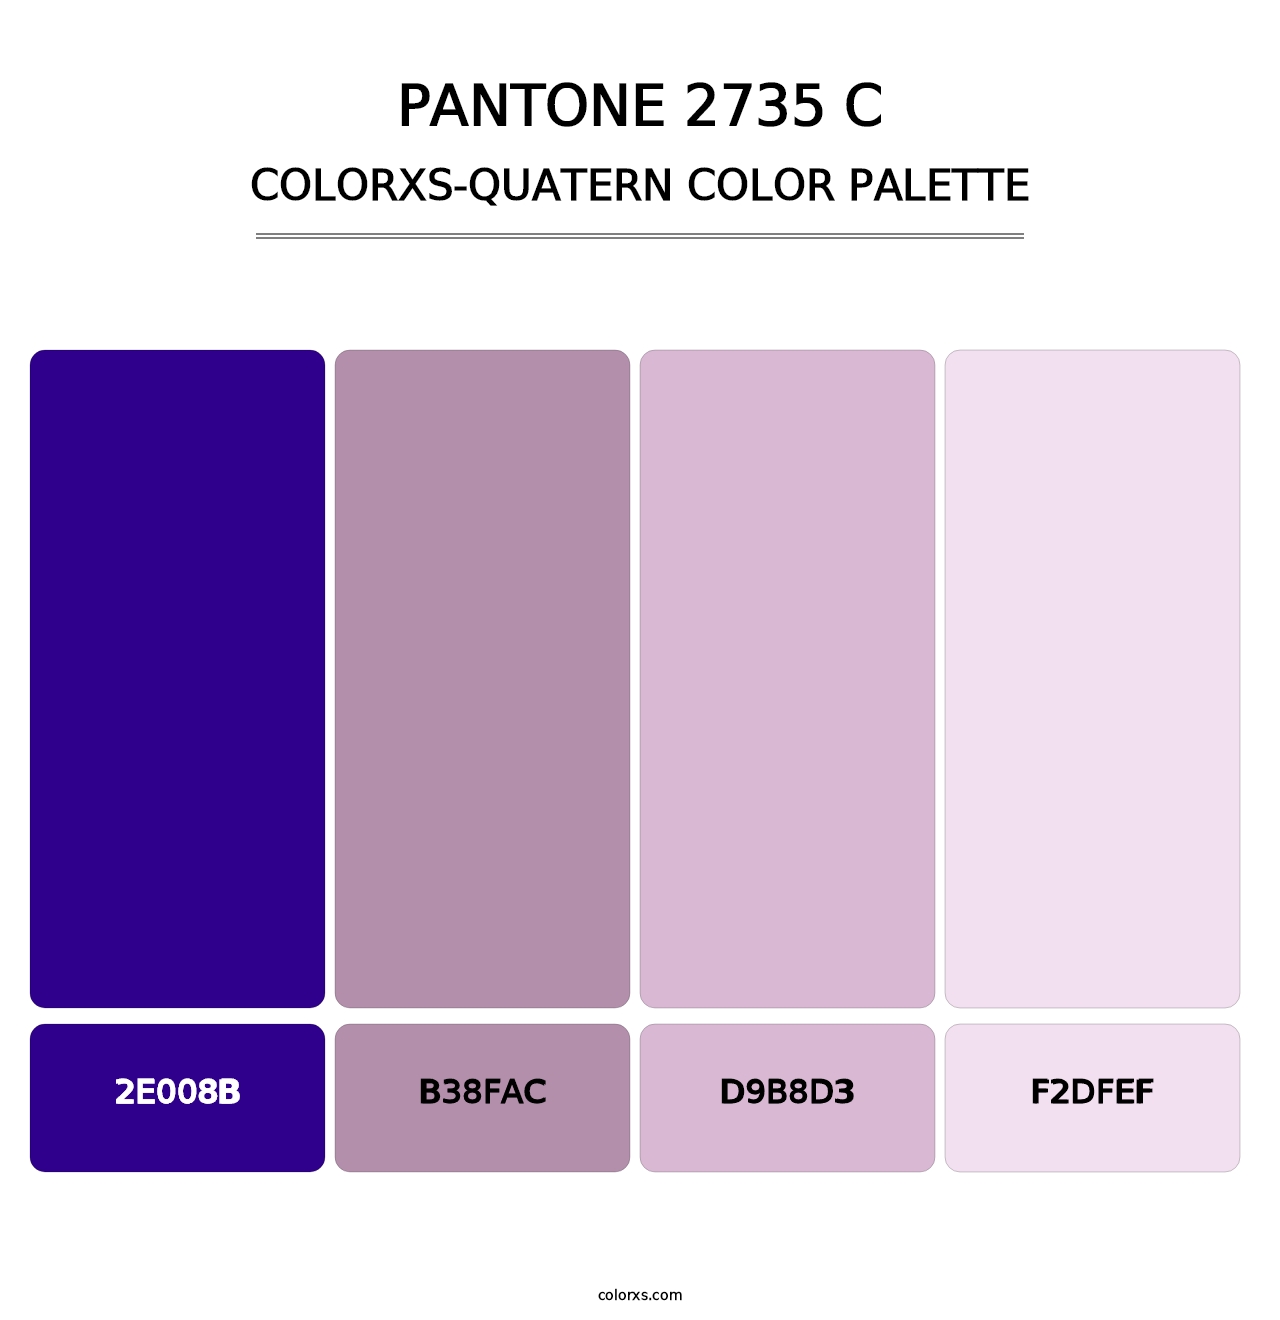 PANTONE 2735 C - Colorxs Quatern Palette